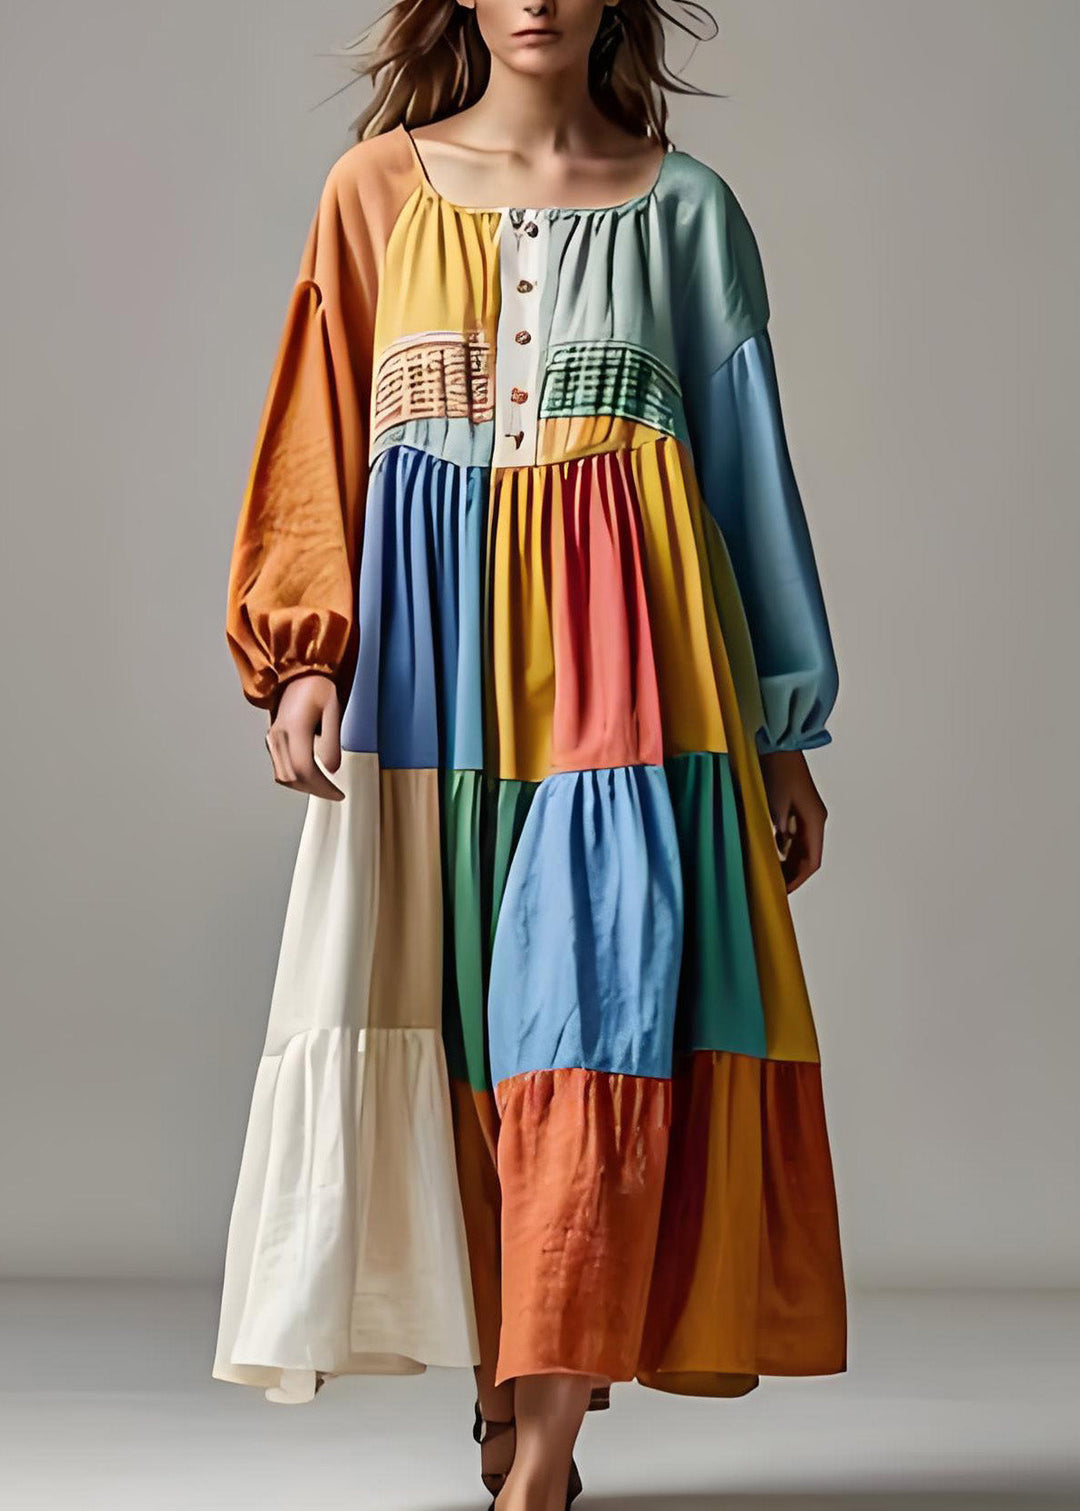 Handmade ColorblockU Neck Wrinkled Patchwork Cotton Dresses Summer